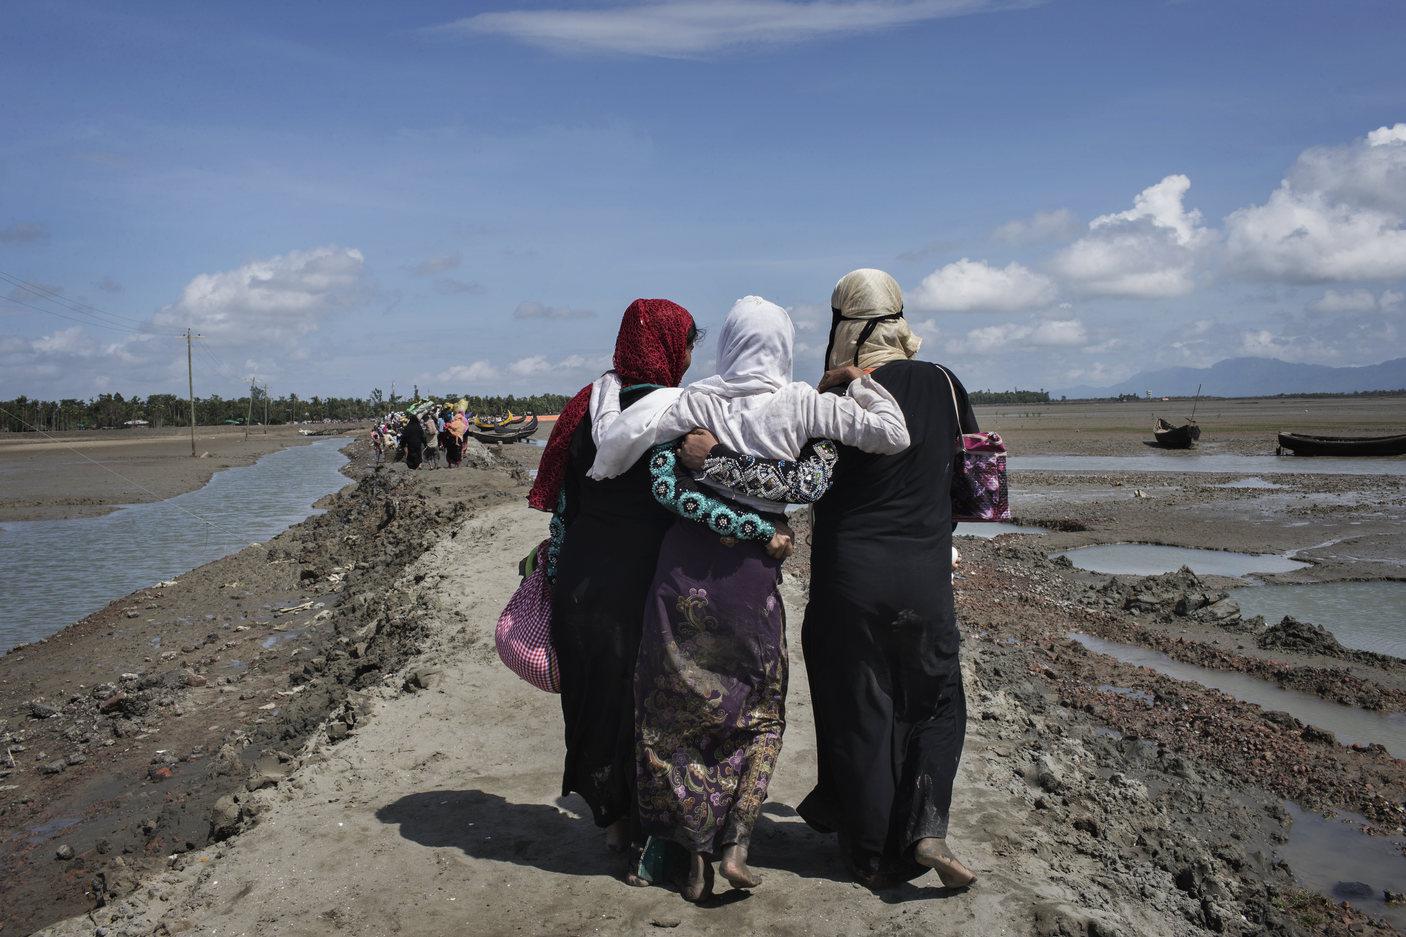 © 2017  أناستازيا تايلولاجئات من الروهيتغا عبرن نهر الناف من بورما الى بنغلادش يمشين الى المناطق الداخلية نحو مخيمات اللاجئين. ر ليند، تك ناف، منطقة حي بازار كوكس، بنغلاديش 